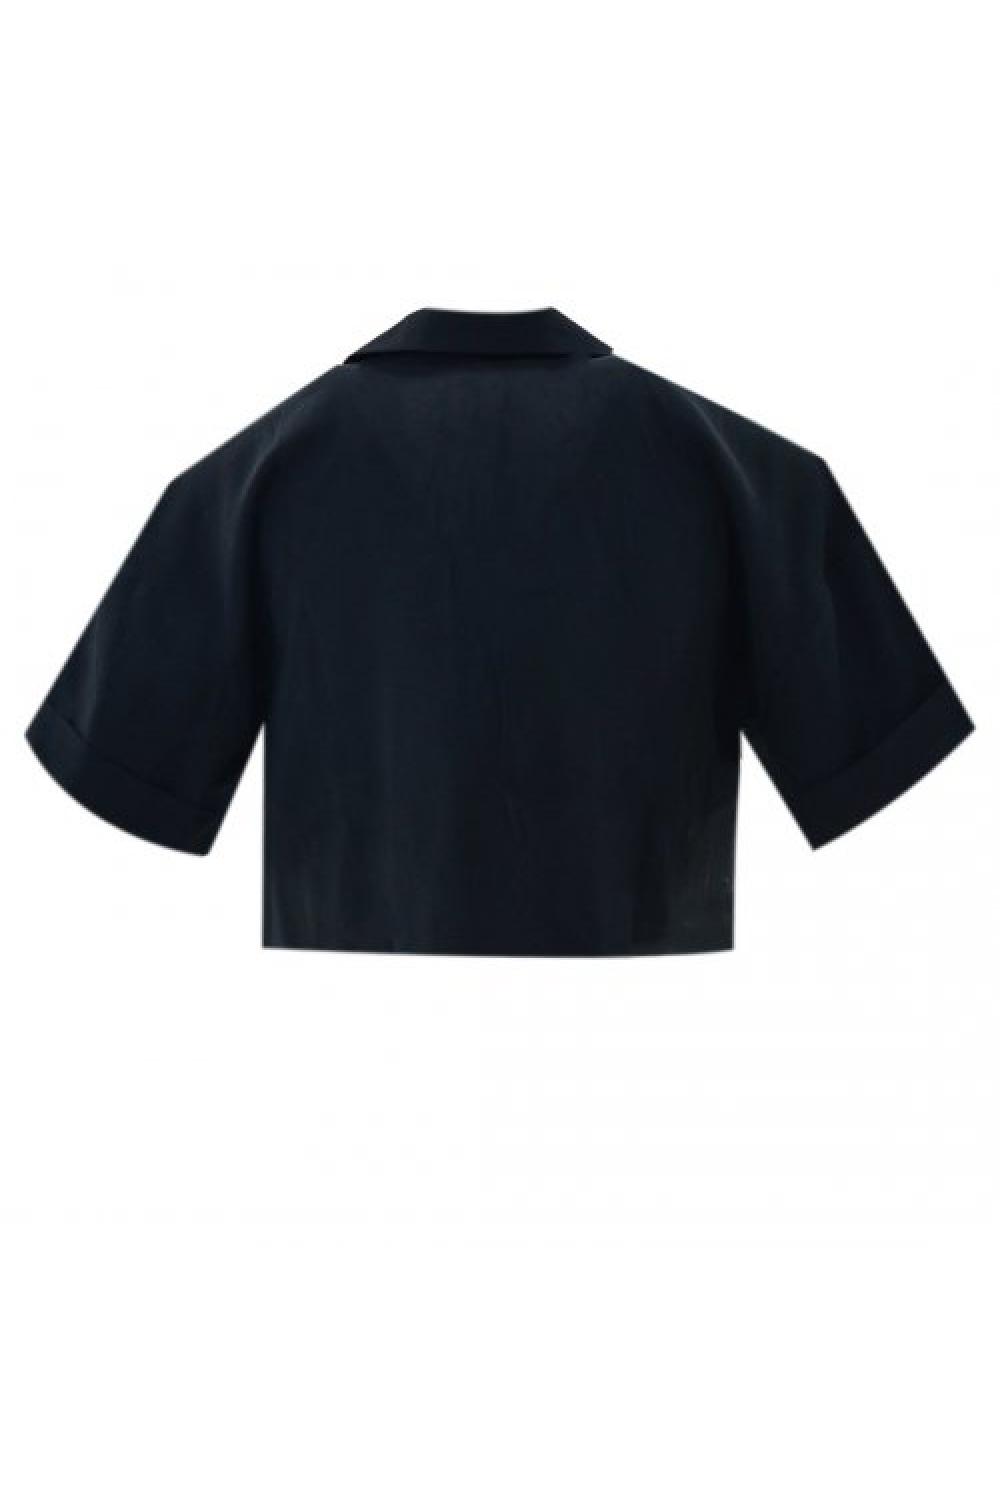 STAFF Shirt Elda Γυναικείο - Μαύρο (62-017.047-N0090)